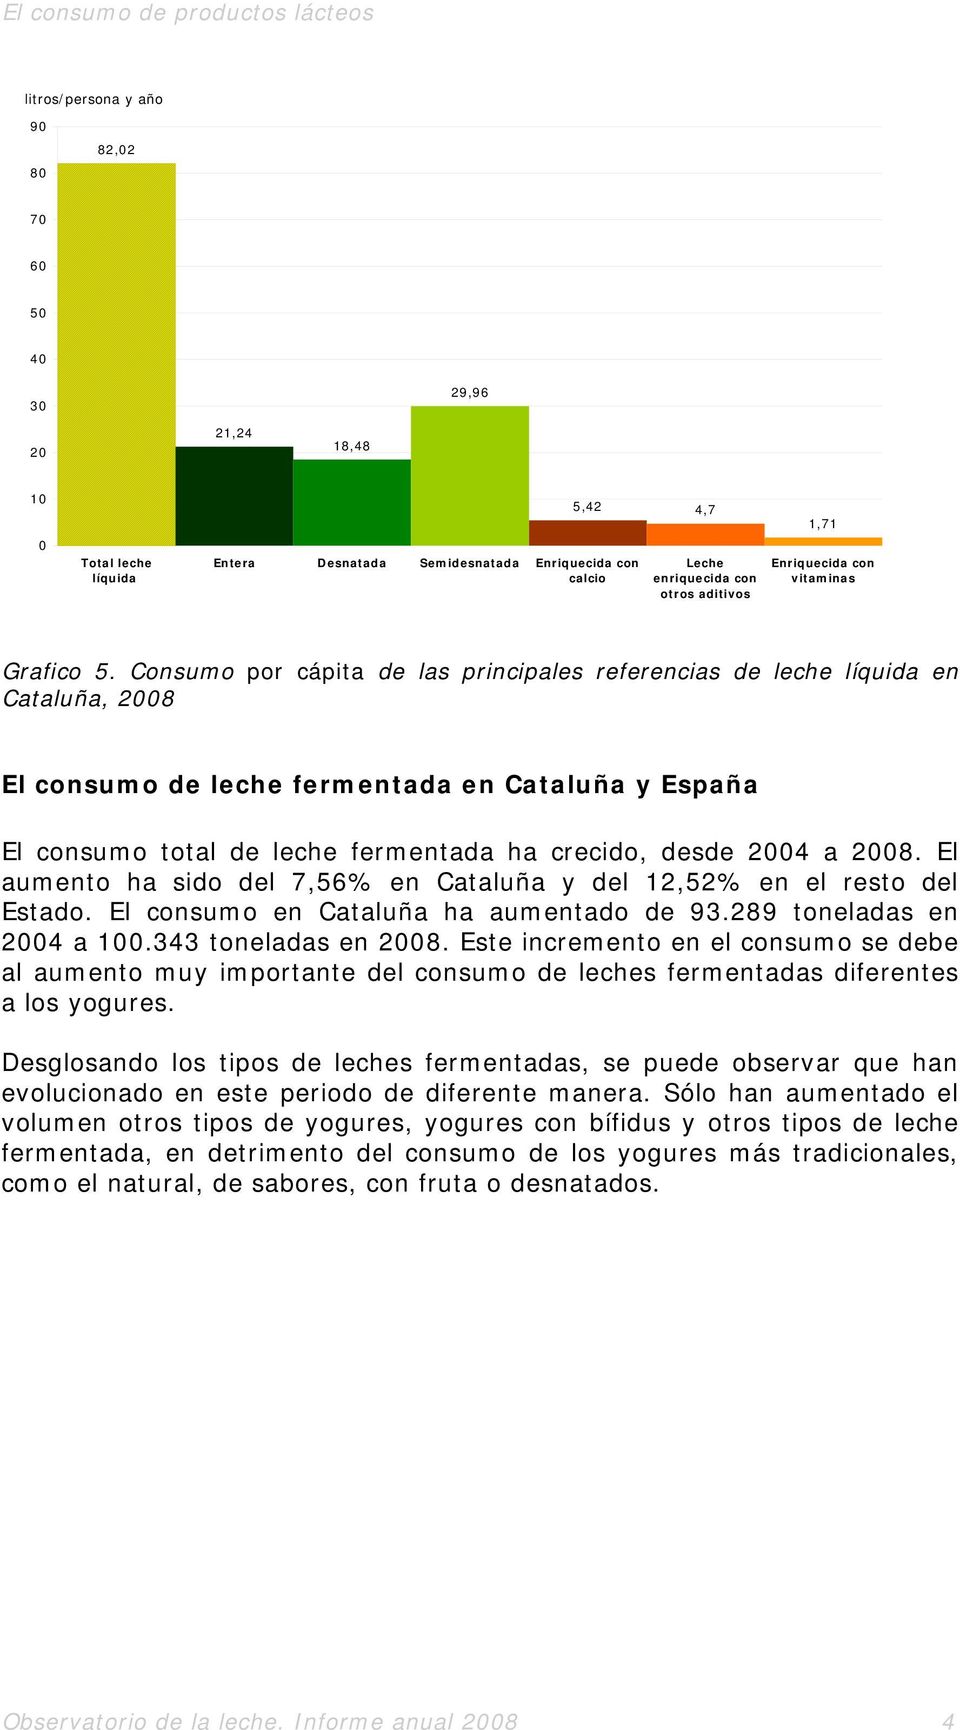 Consumo por cápita de las principales referencias de leche líquida en Cataluña, 28 El consumo de leche fermentada en Cataluña y España El consumo total de leche fermentada ha crecido, desde 24 a 28.